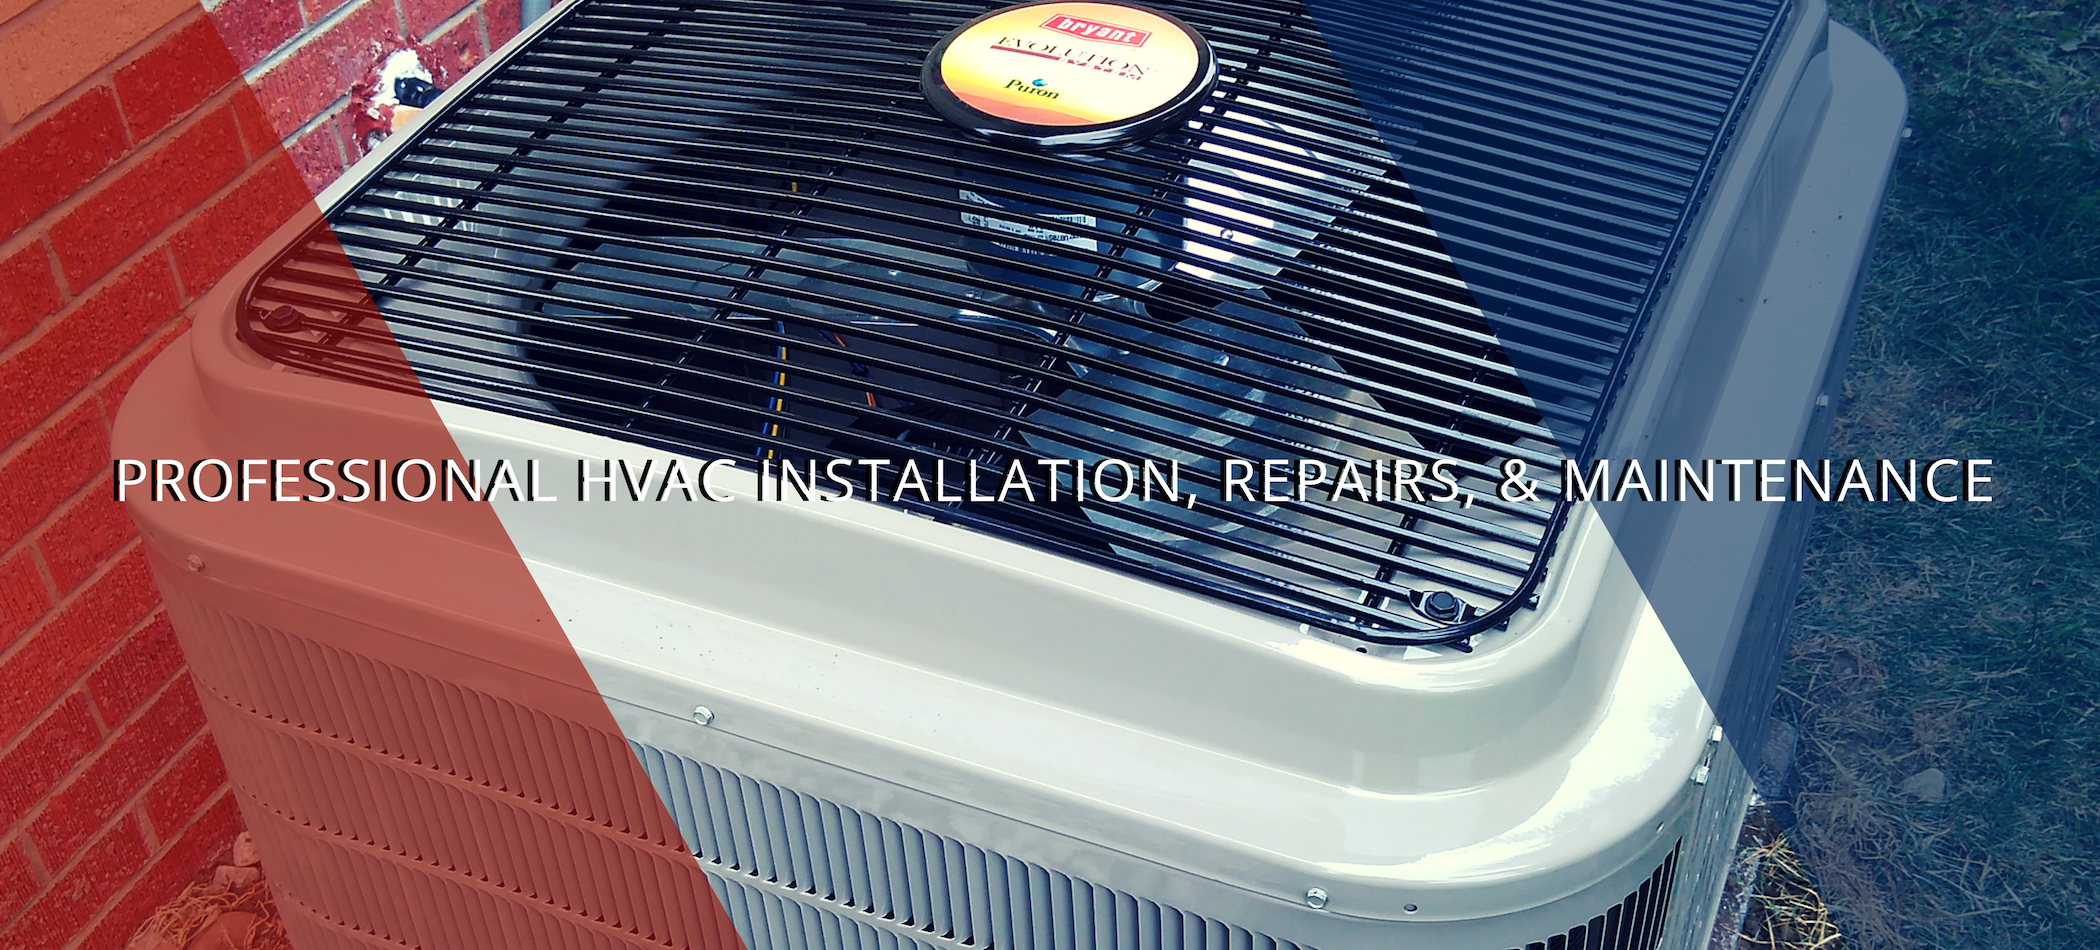 HVAC repairs installation and maintenance